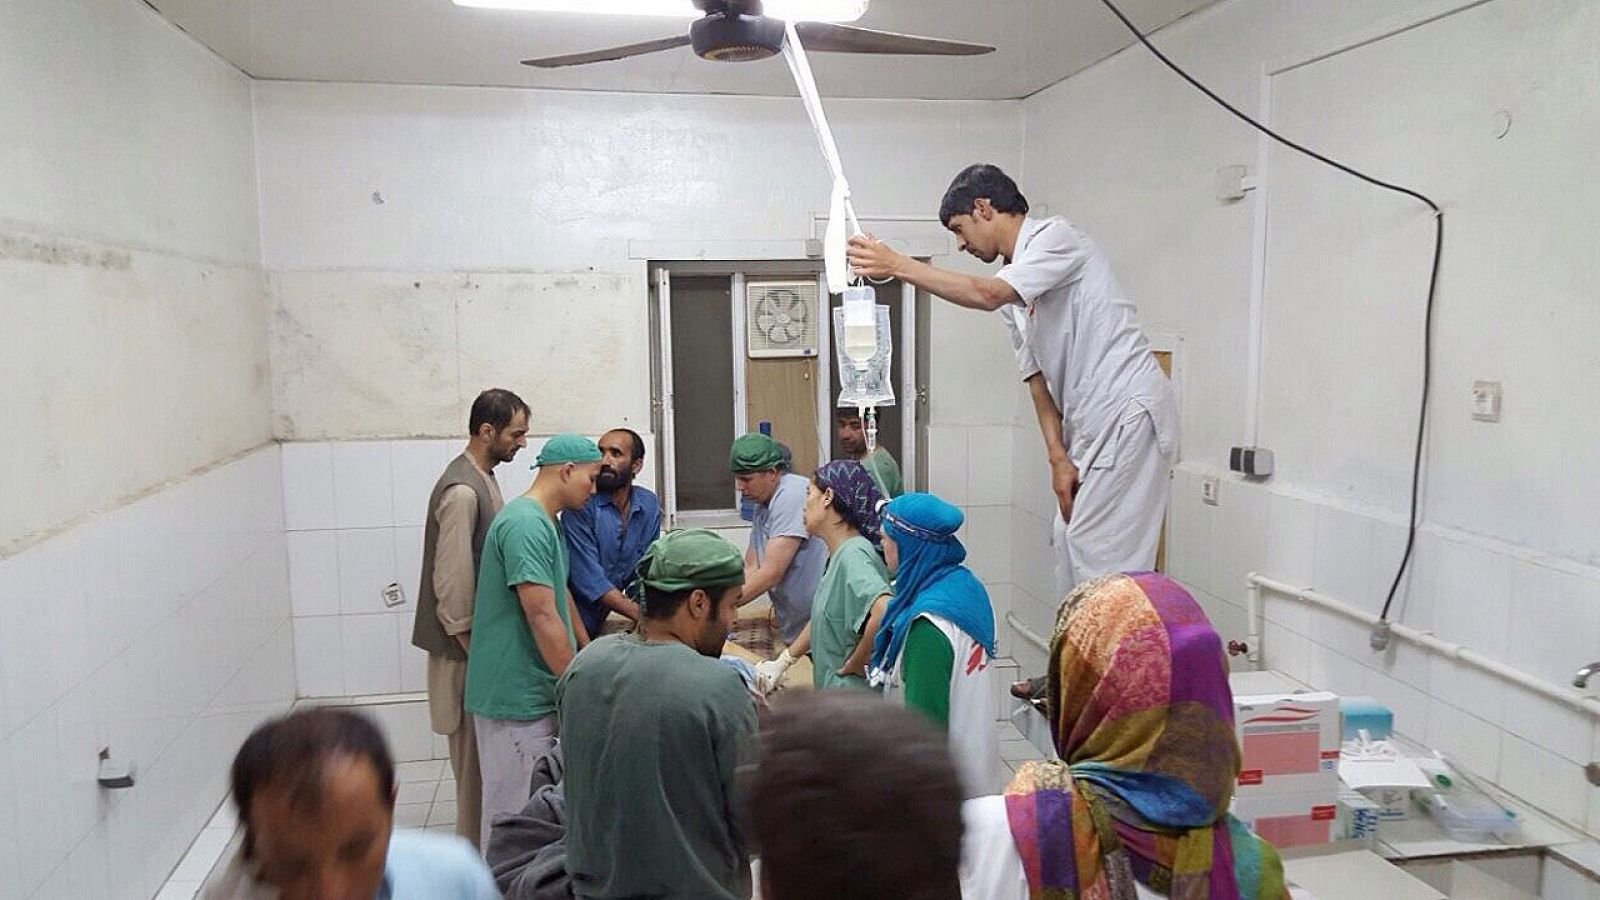 Fotografía proporcionada por Médicos sin Fronteras (MSF) que muestra a médicos trabajando en una de las áreas del hospital de Kunduz que no resultó afectada por el bombardeo de EE.UU.